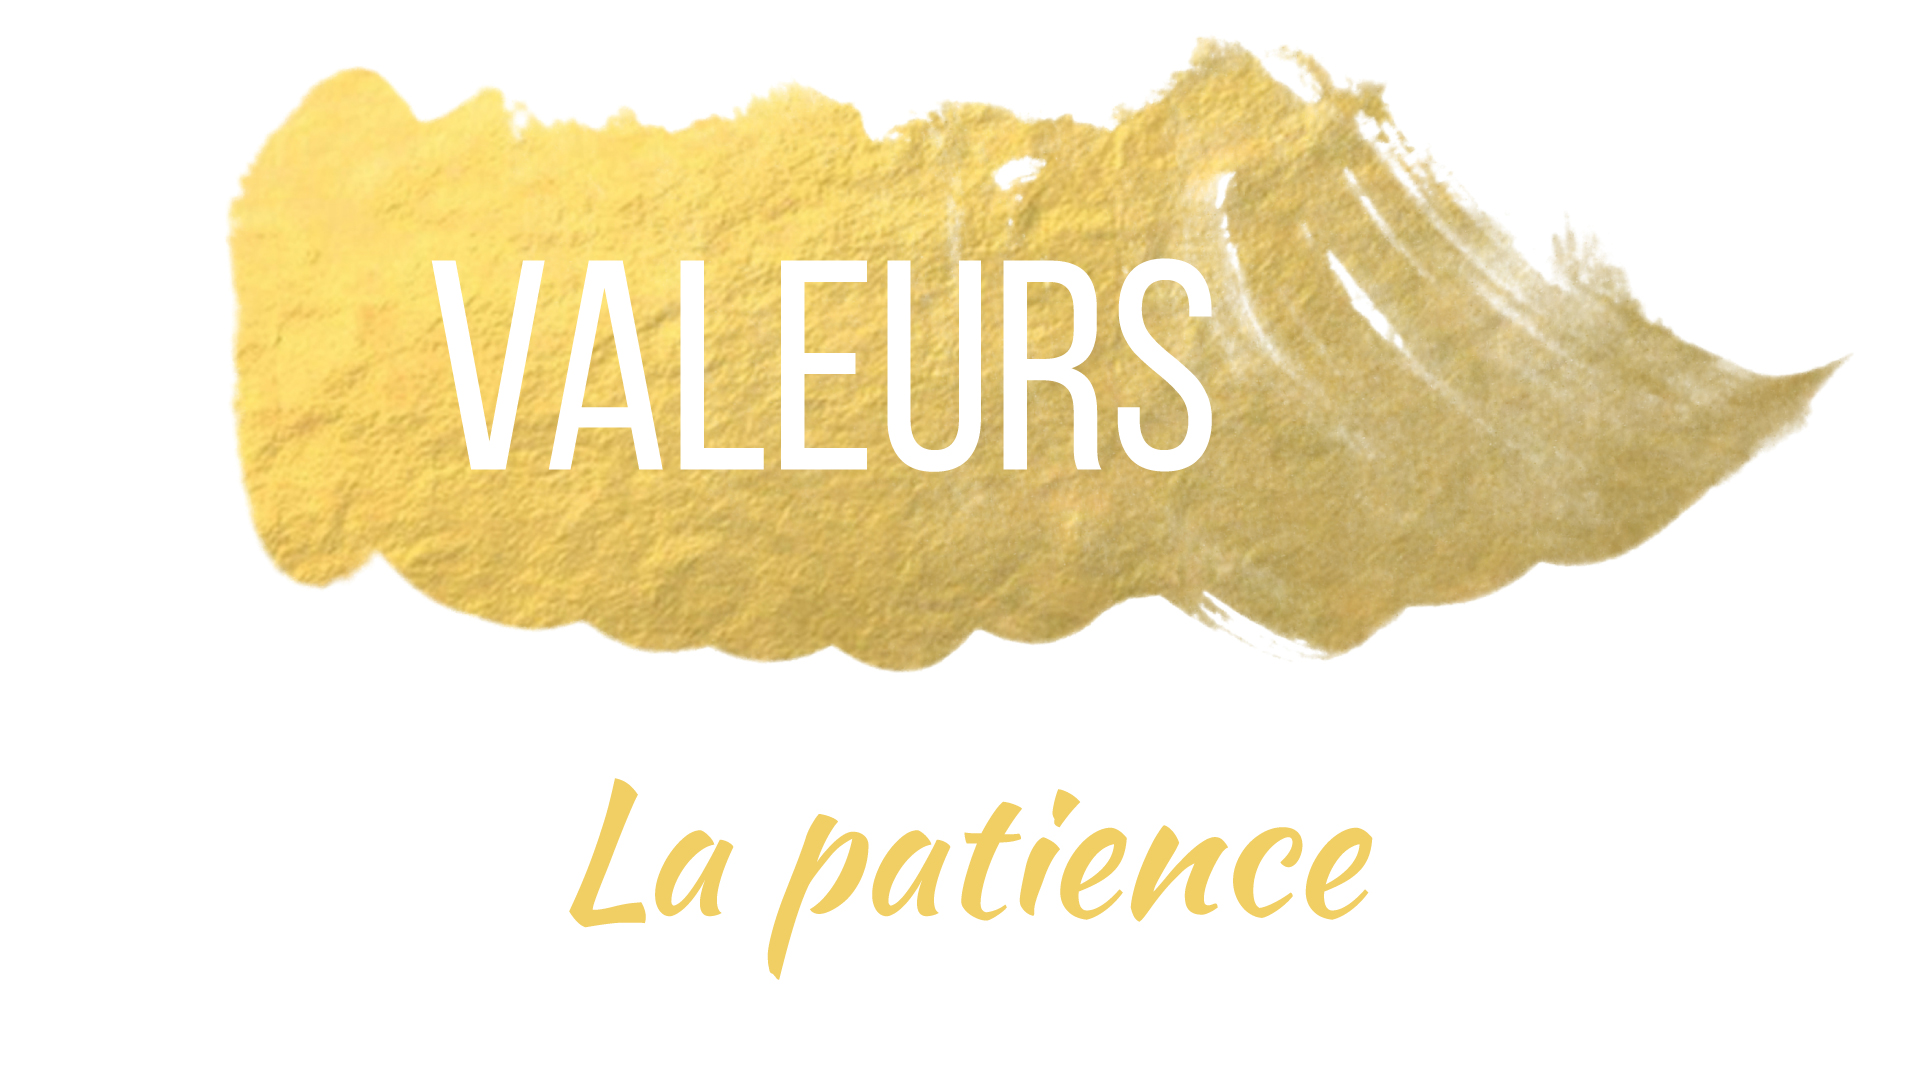 Valeurs - La patience